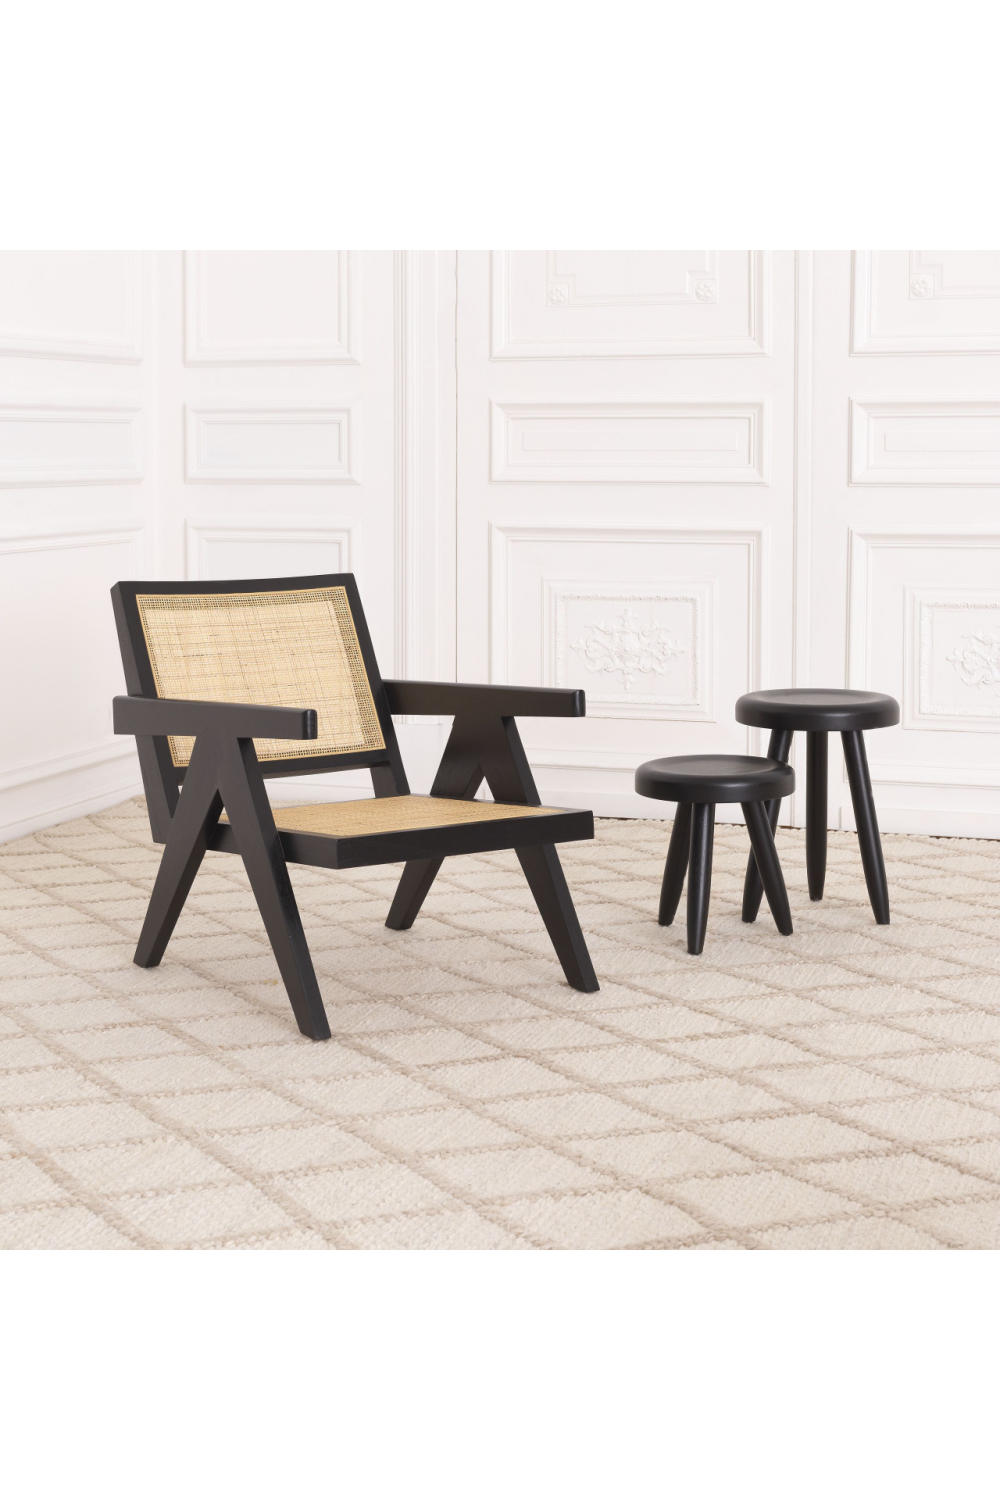 Rattan Cane Lounge Chair | Eichholtz Aristide | Oroa.com